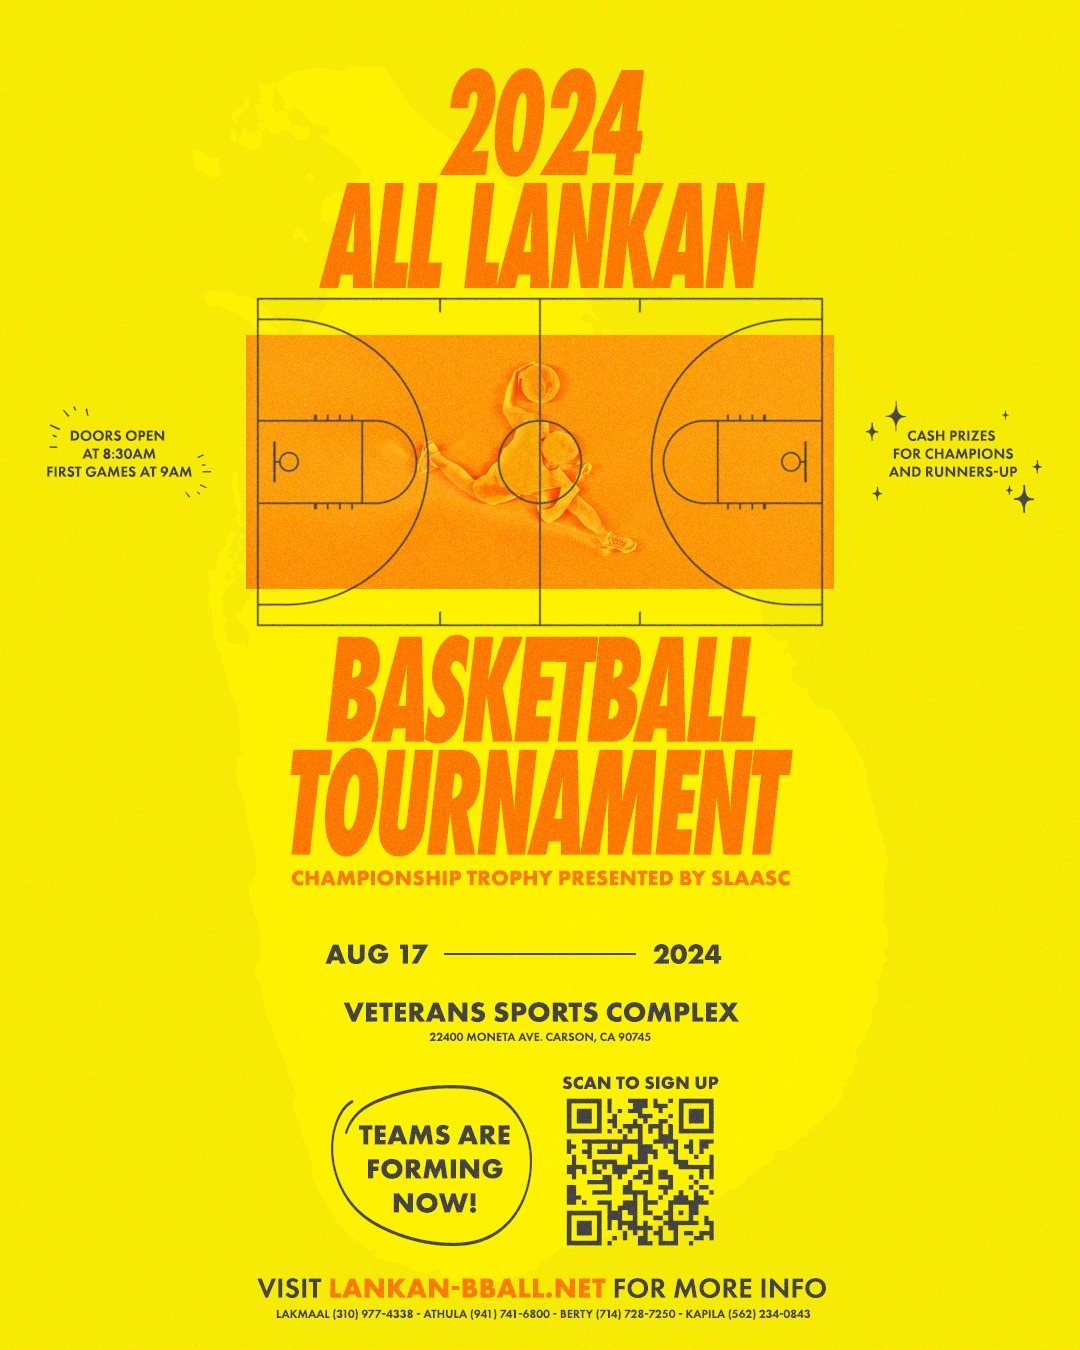 2024 All Lankan Basketball Tournament | USA